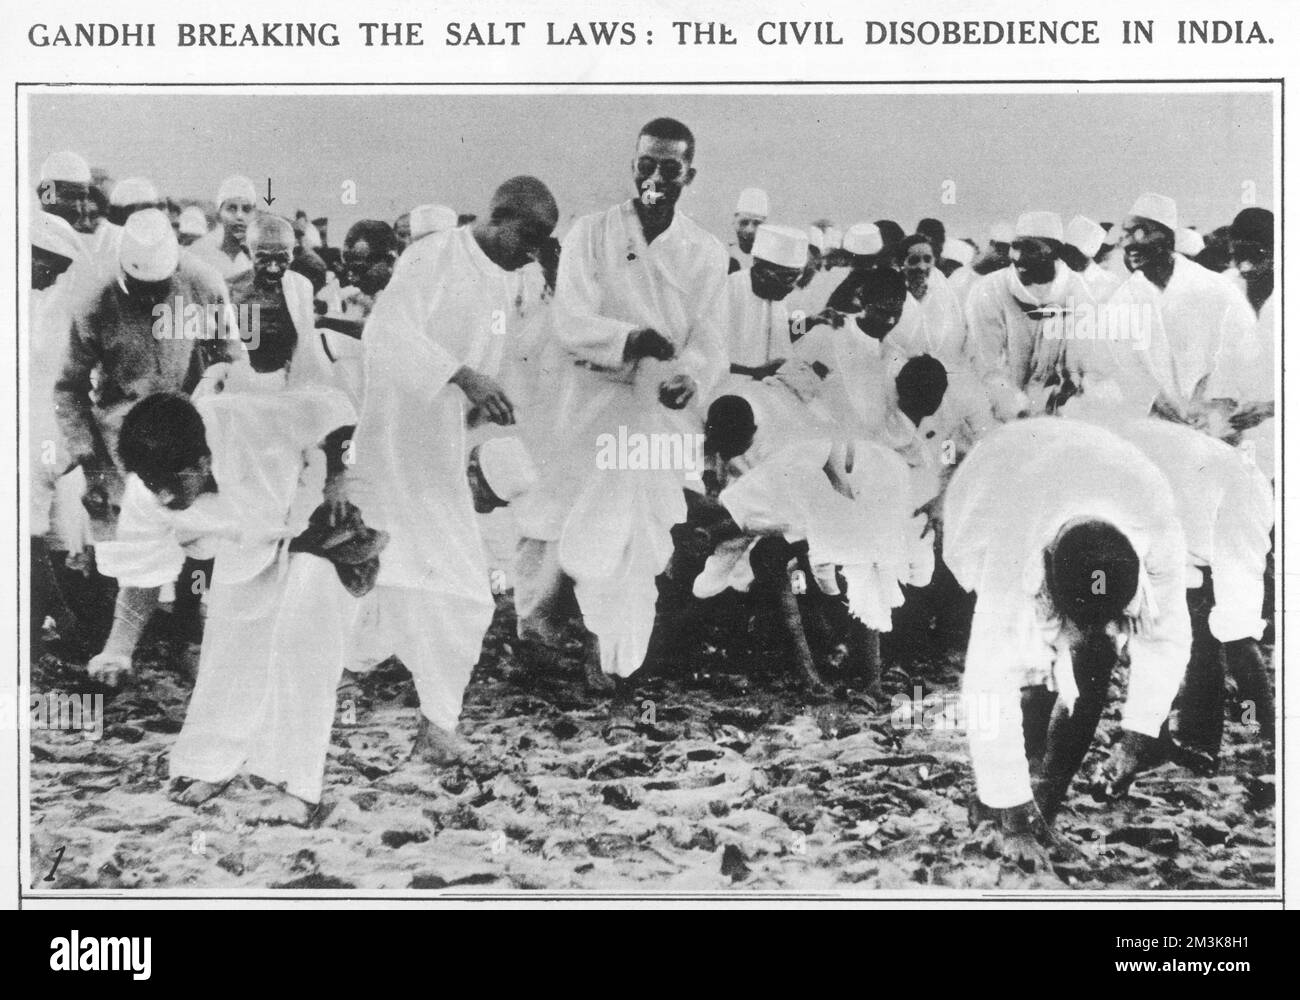 1930 führte Ghandi den Salzmarsch nach Dandi, was ein Akt gewaltlosen Protests gegen die britische Salzsteuer im Kolonialindien war. Datum: 1930 Stockfoto